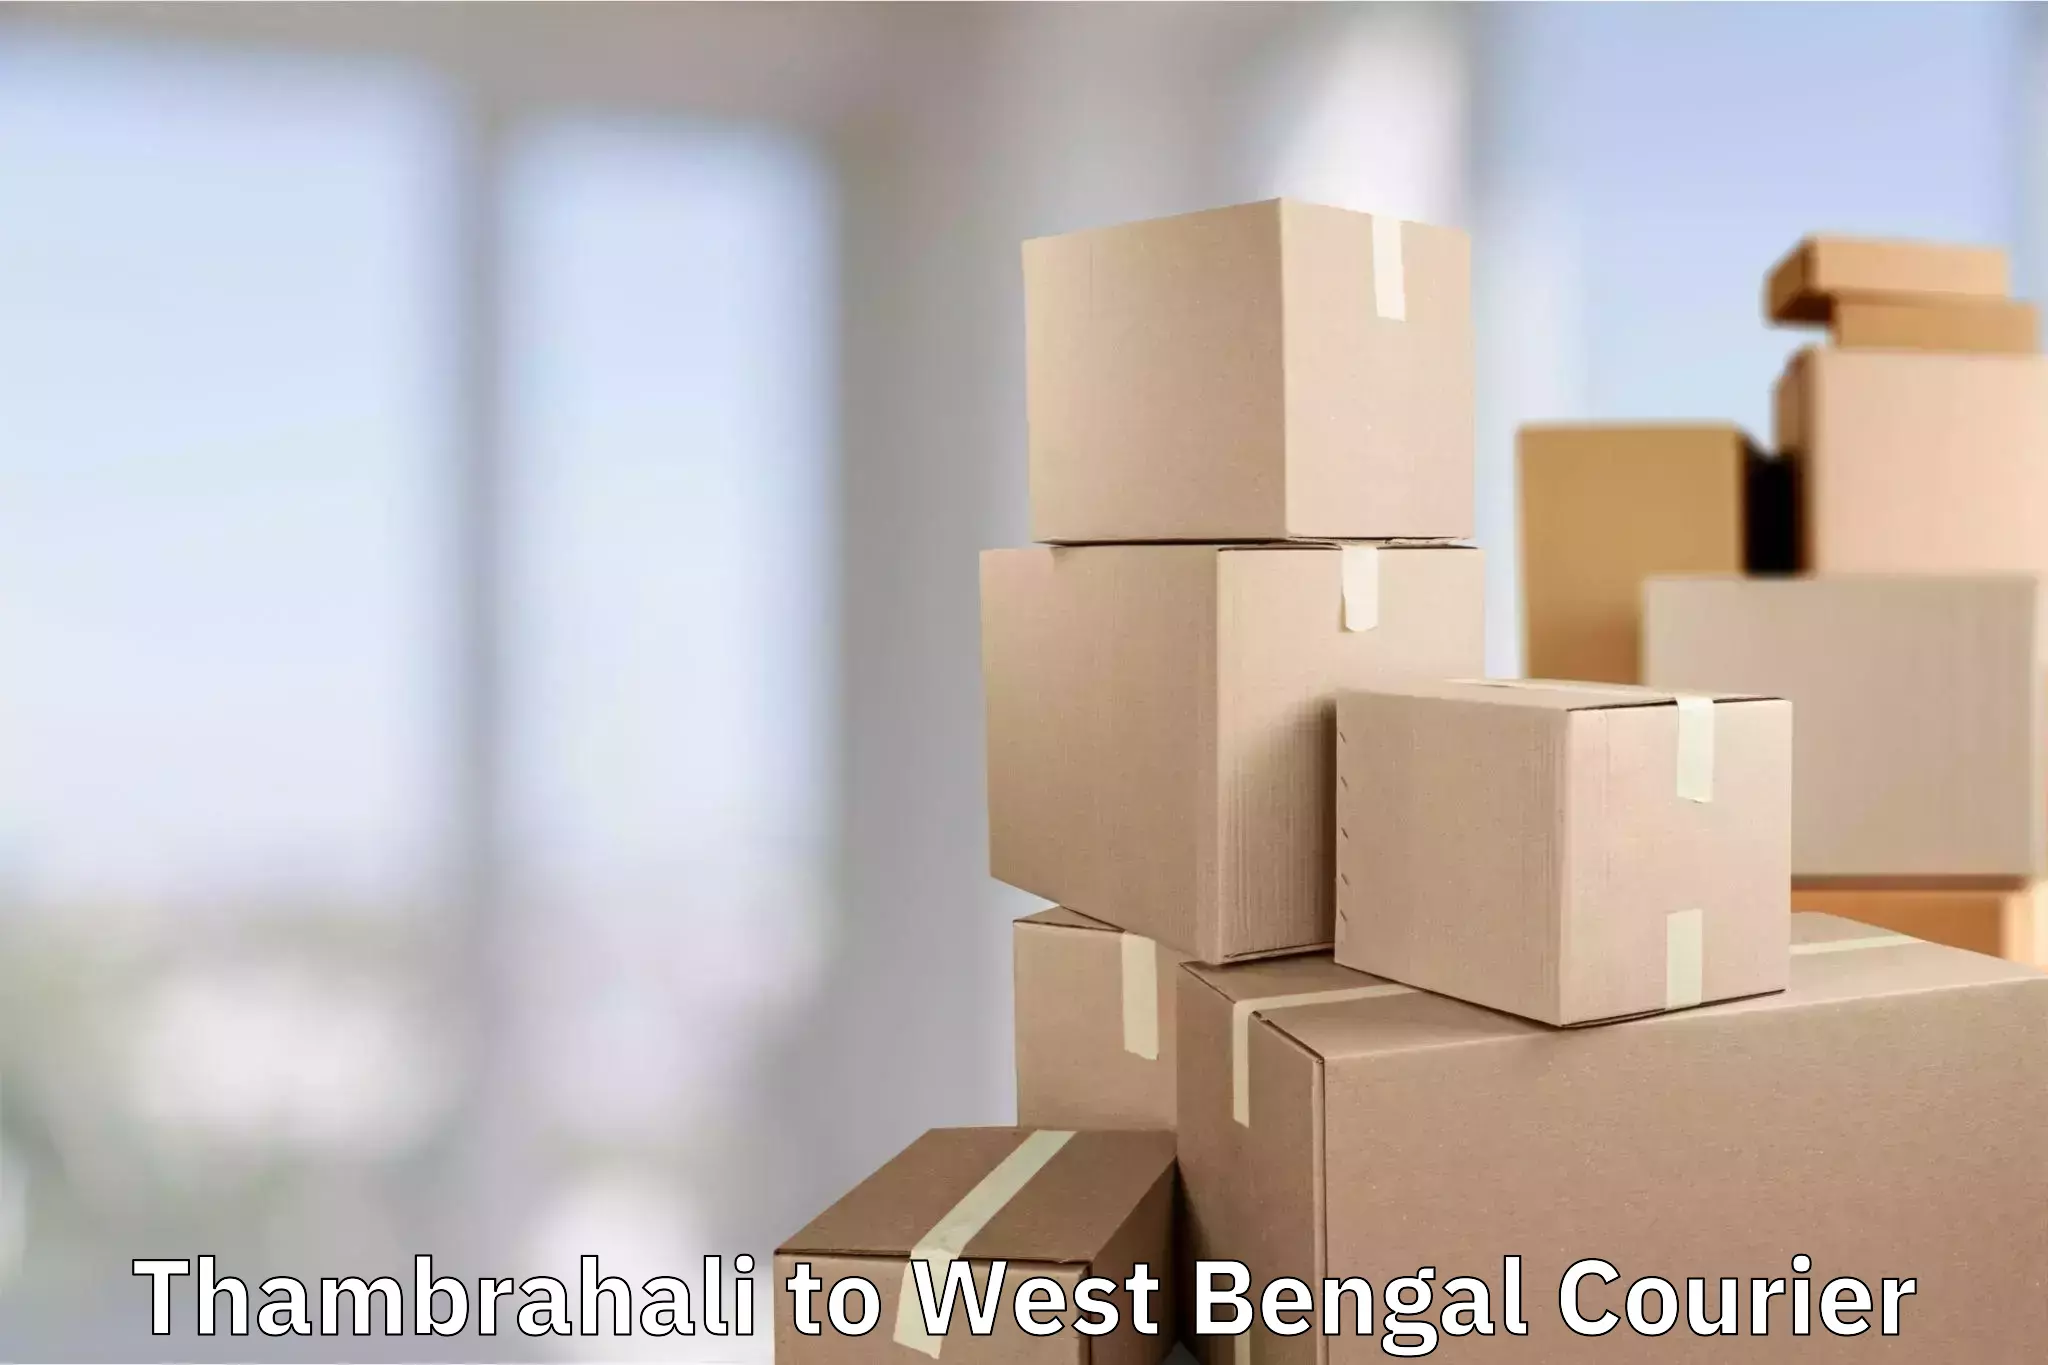 Hassle-free luggage shipping Thambrahali to Kolkata